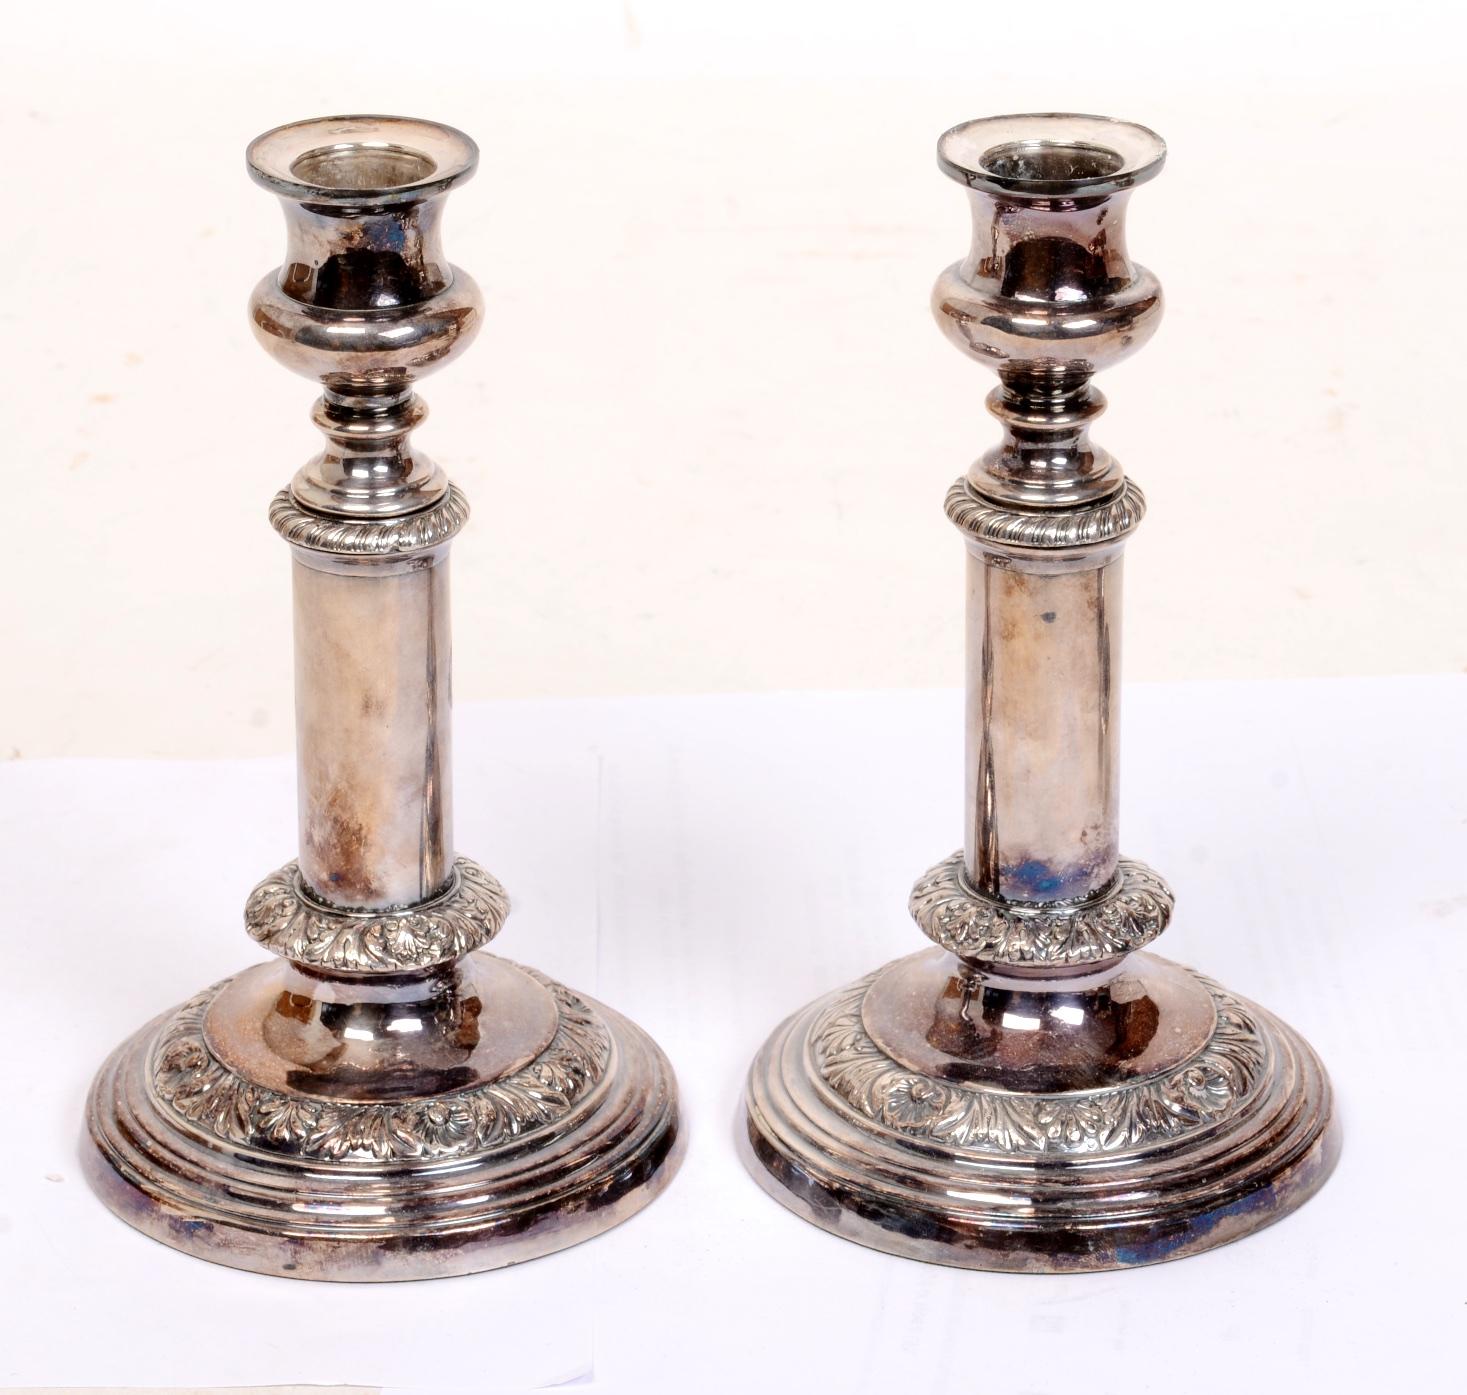 Ein Paar Geo III antike Sheffield Platte teleskopische Kerzenhalter von der bedeutenden Hersteller Thomas & James Creswick, die aus der berühmten Familie der langjährigen Silberschmiede stammt. Sein Großvater war einer der ersten Silberschmiede, der